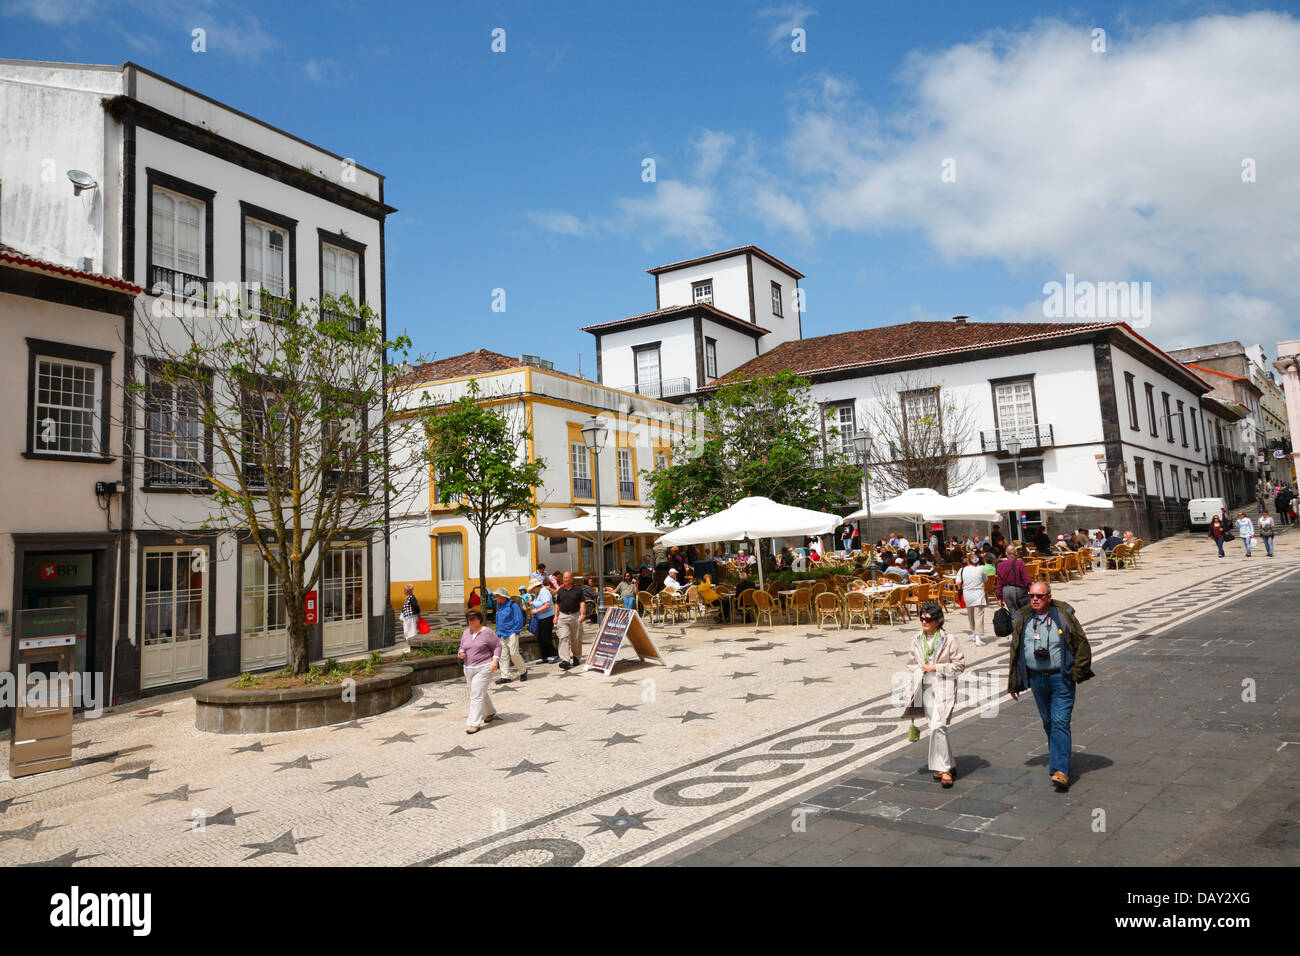 Plazza nella città di Ponta Delgada, isola Sao Miguel, Azzorre, Portogallo Foto Stock